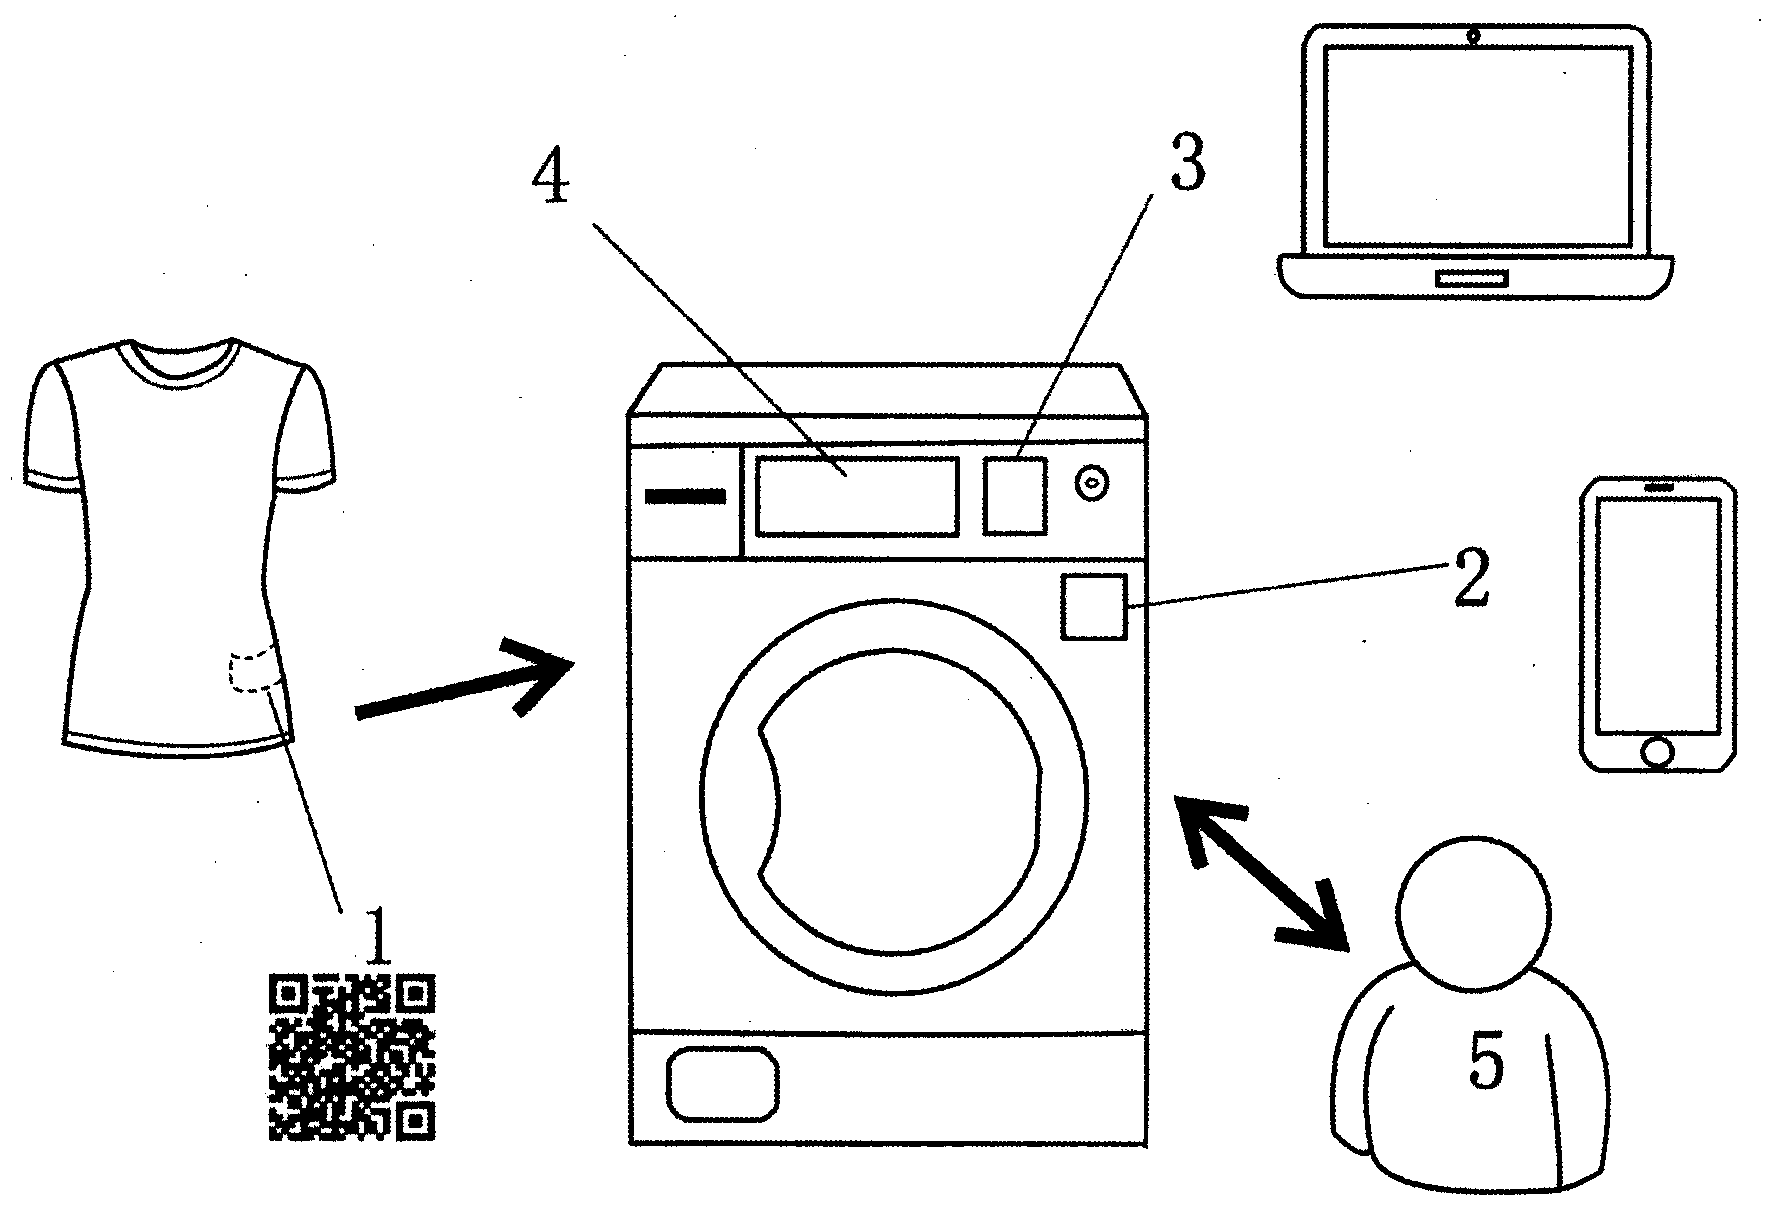 Intelligent washing method based on wireless automatic identification technology for washing machine